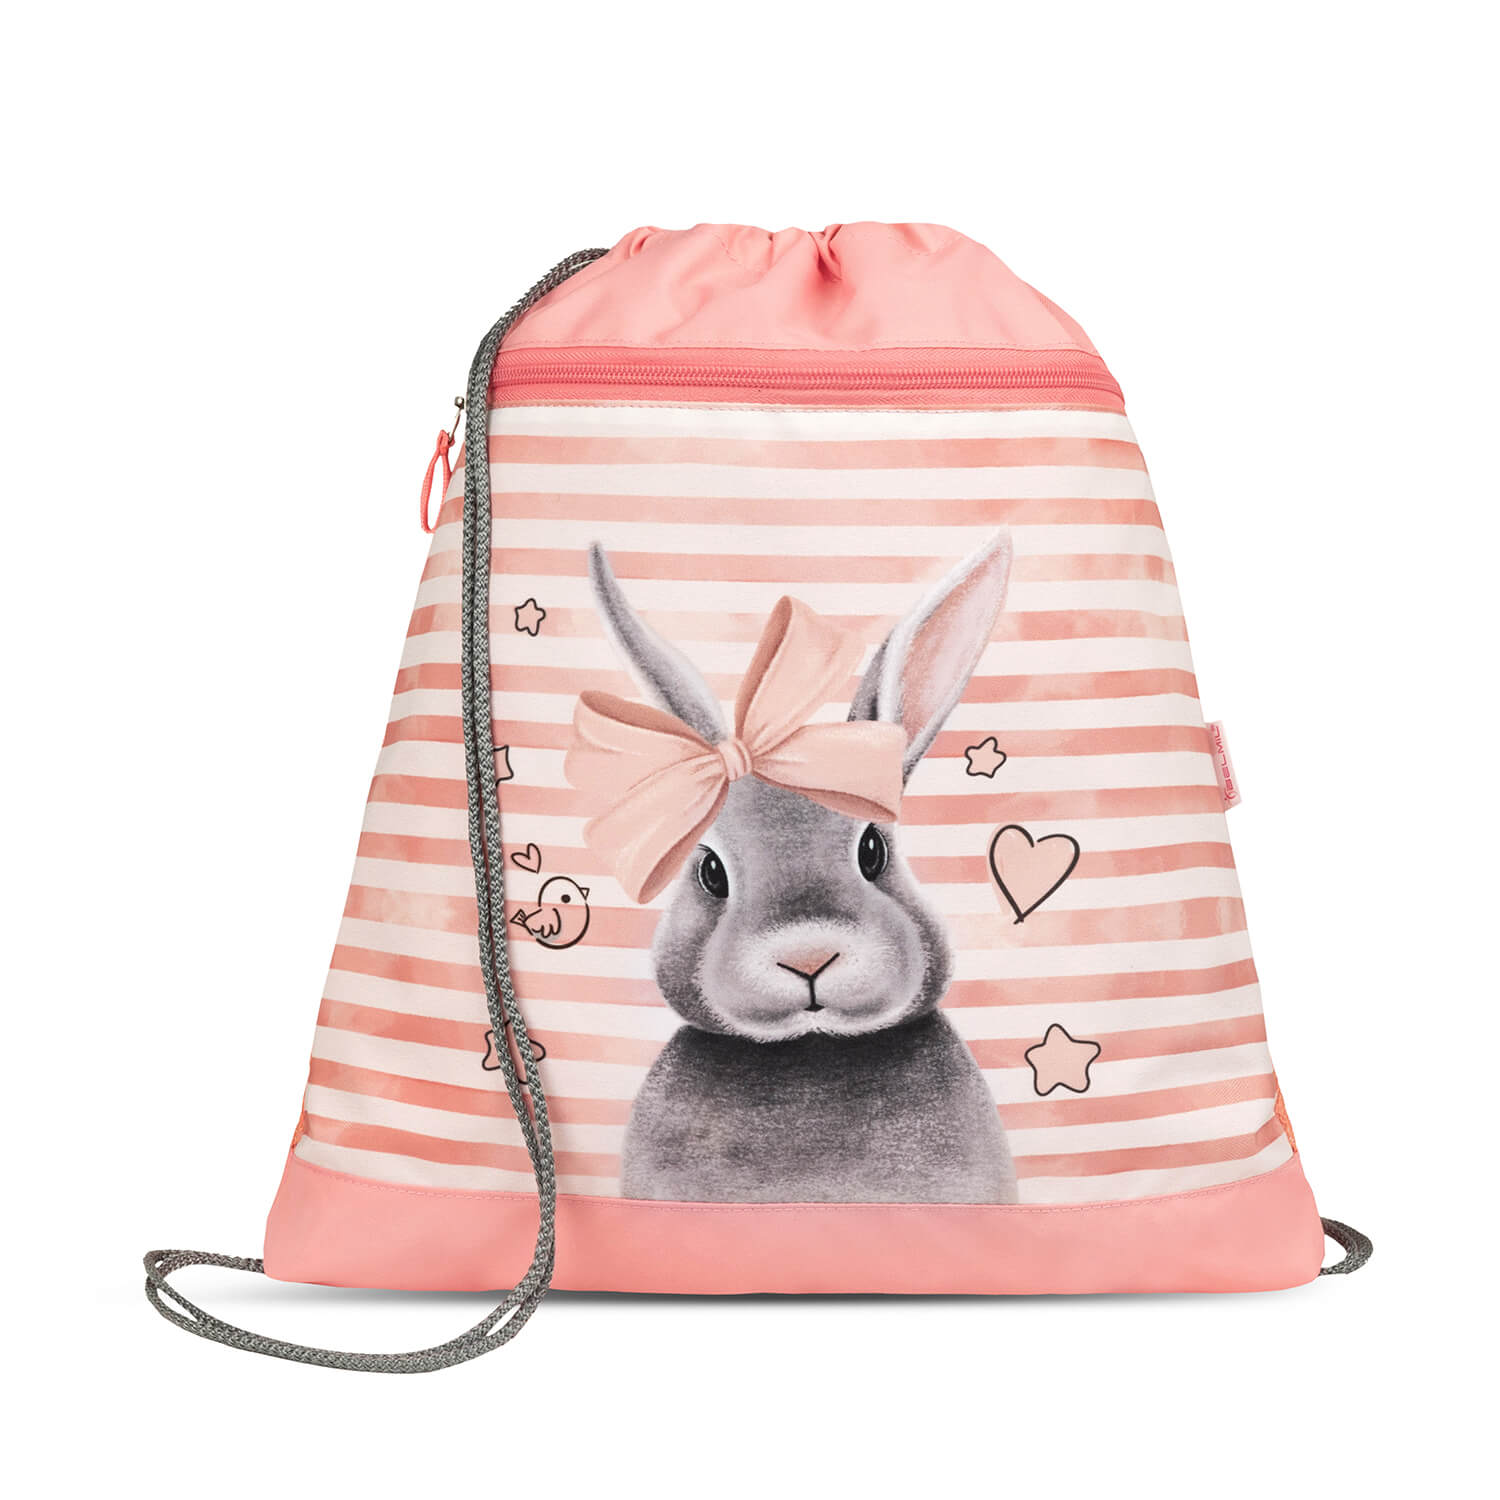 Mini-Fit Little Bunnie schoolbag set 4 pcs